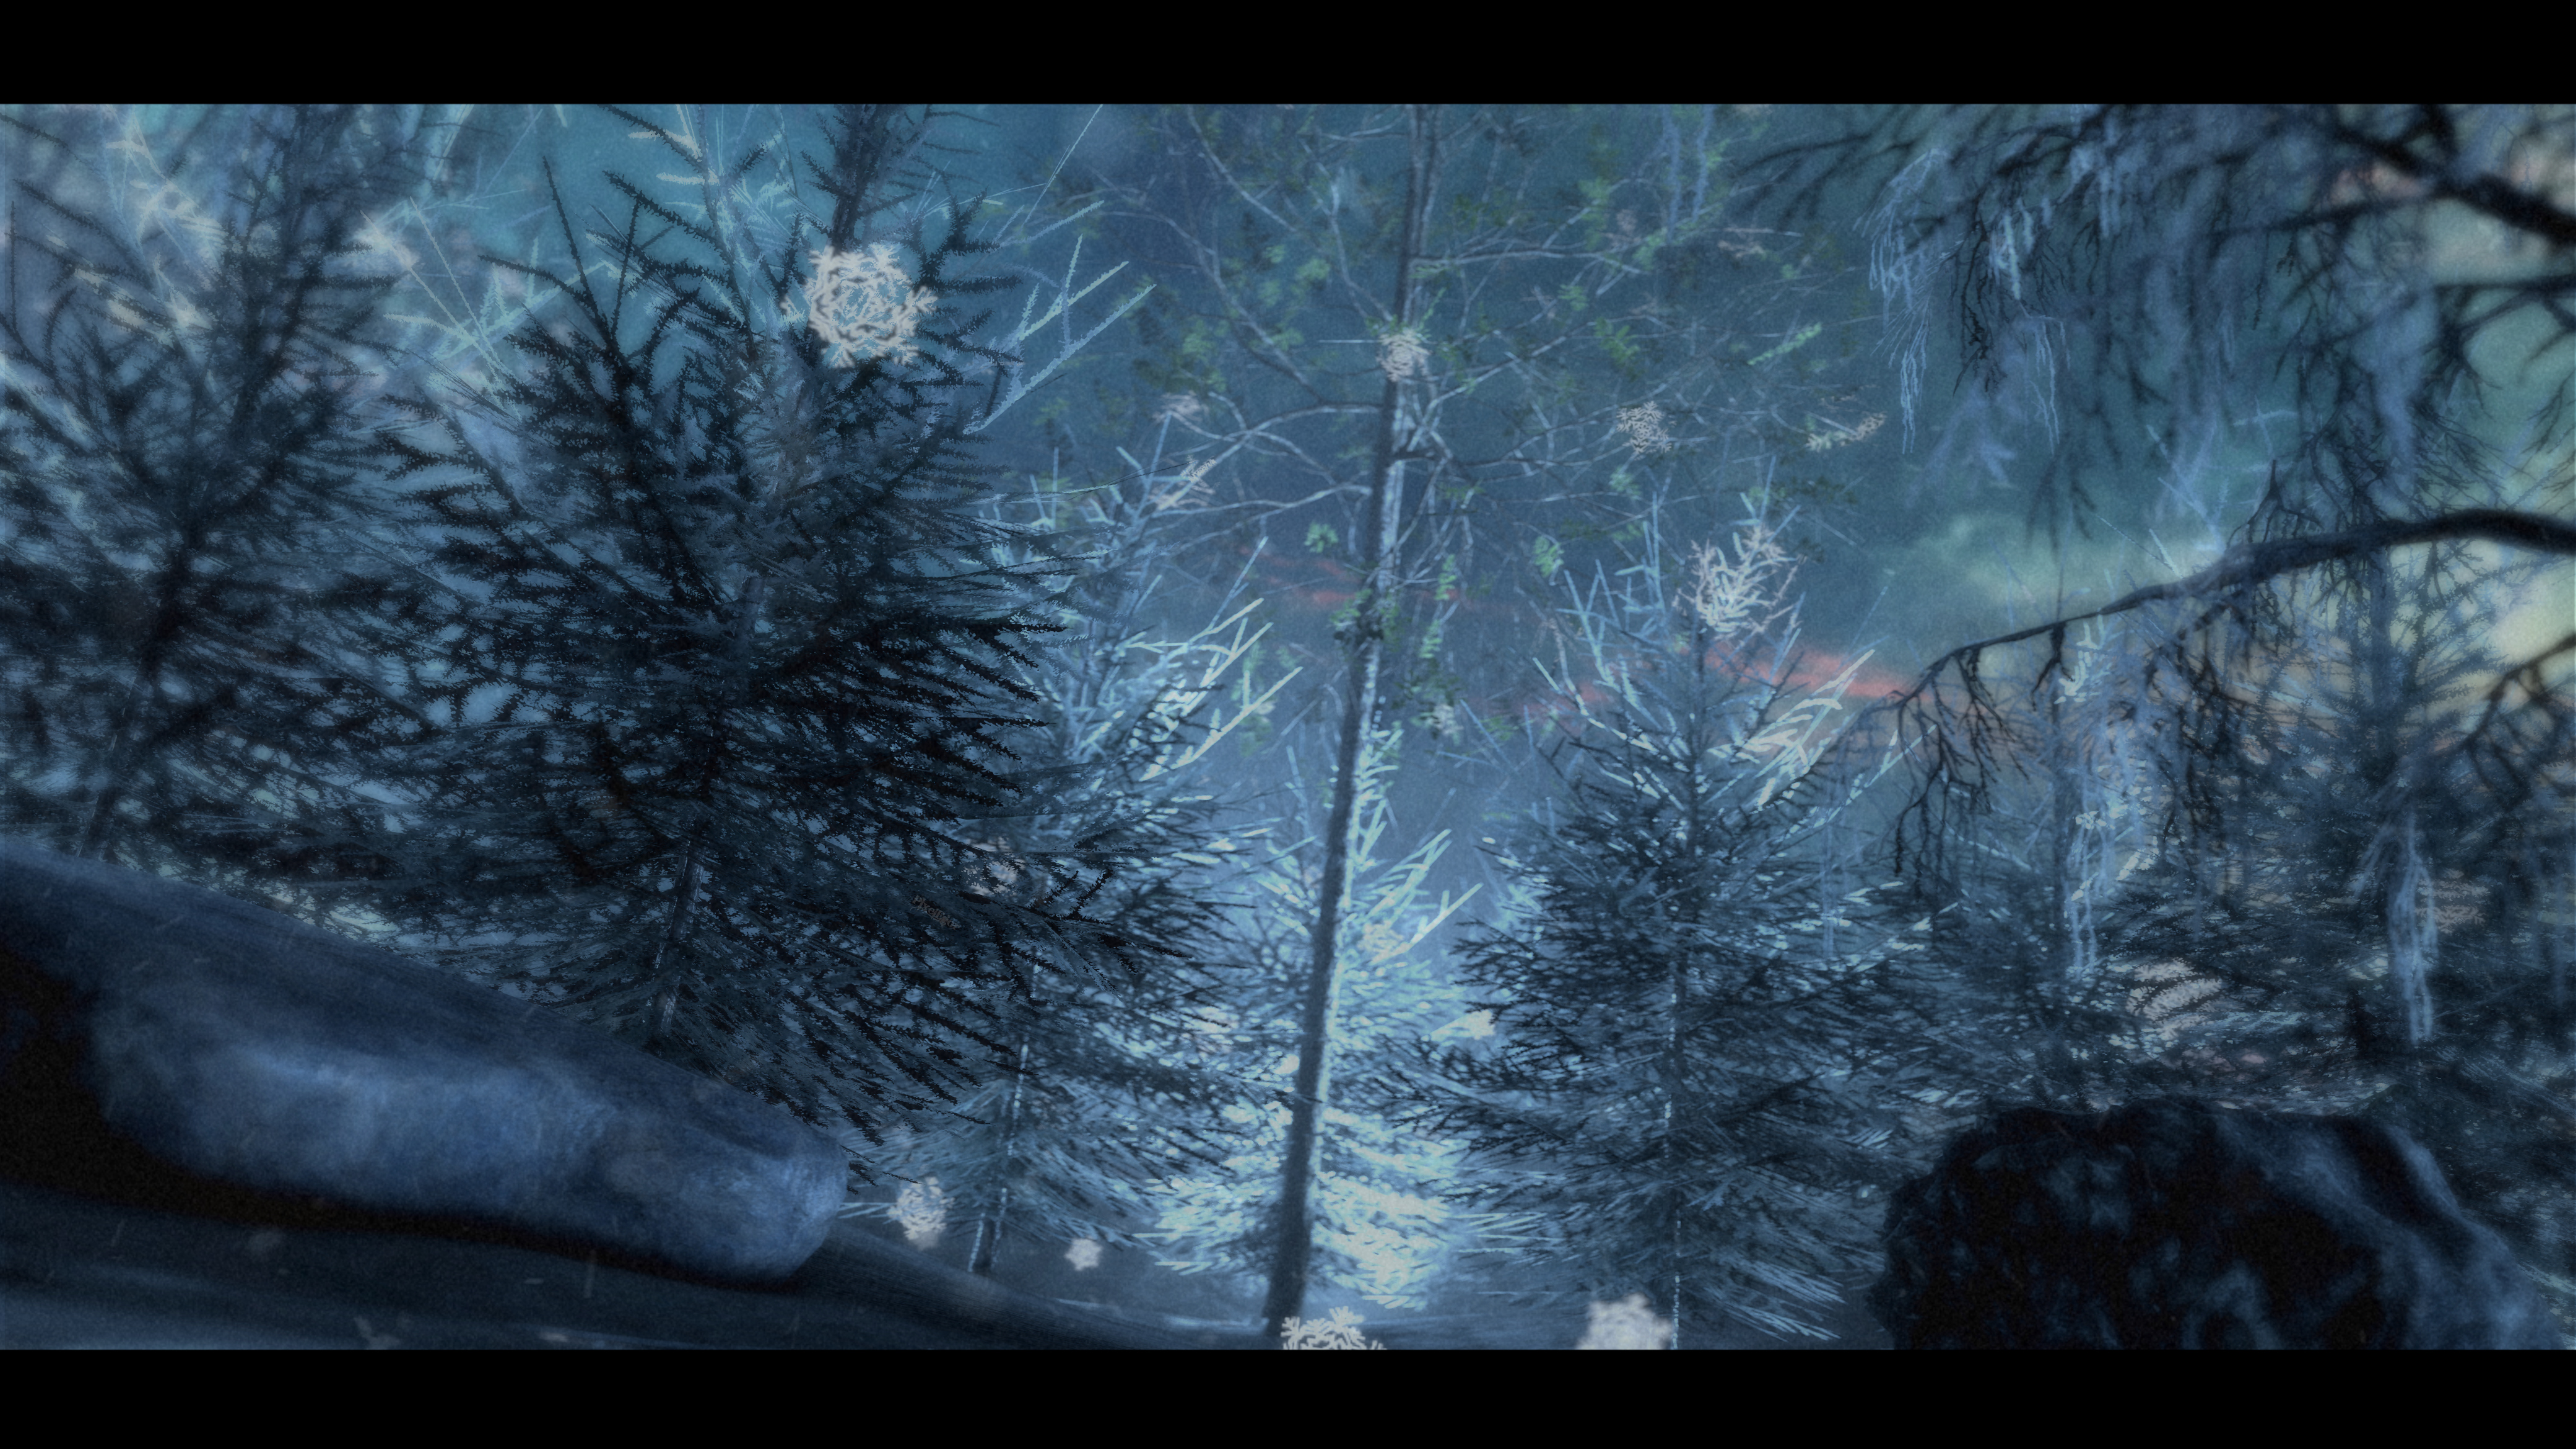 SFM) (4k) The Frozen Forest by PixelEgor on DeviantArt